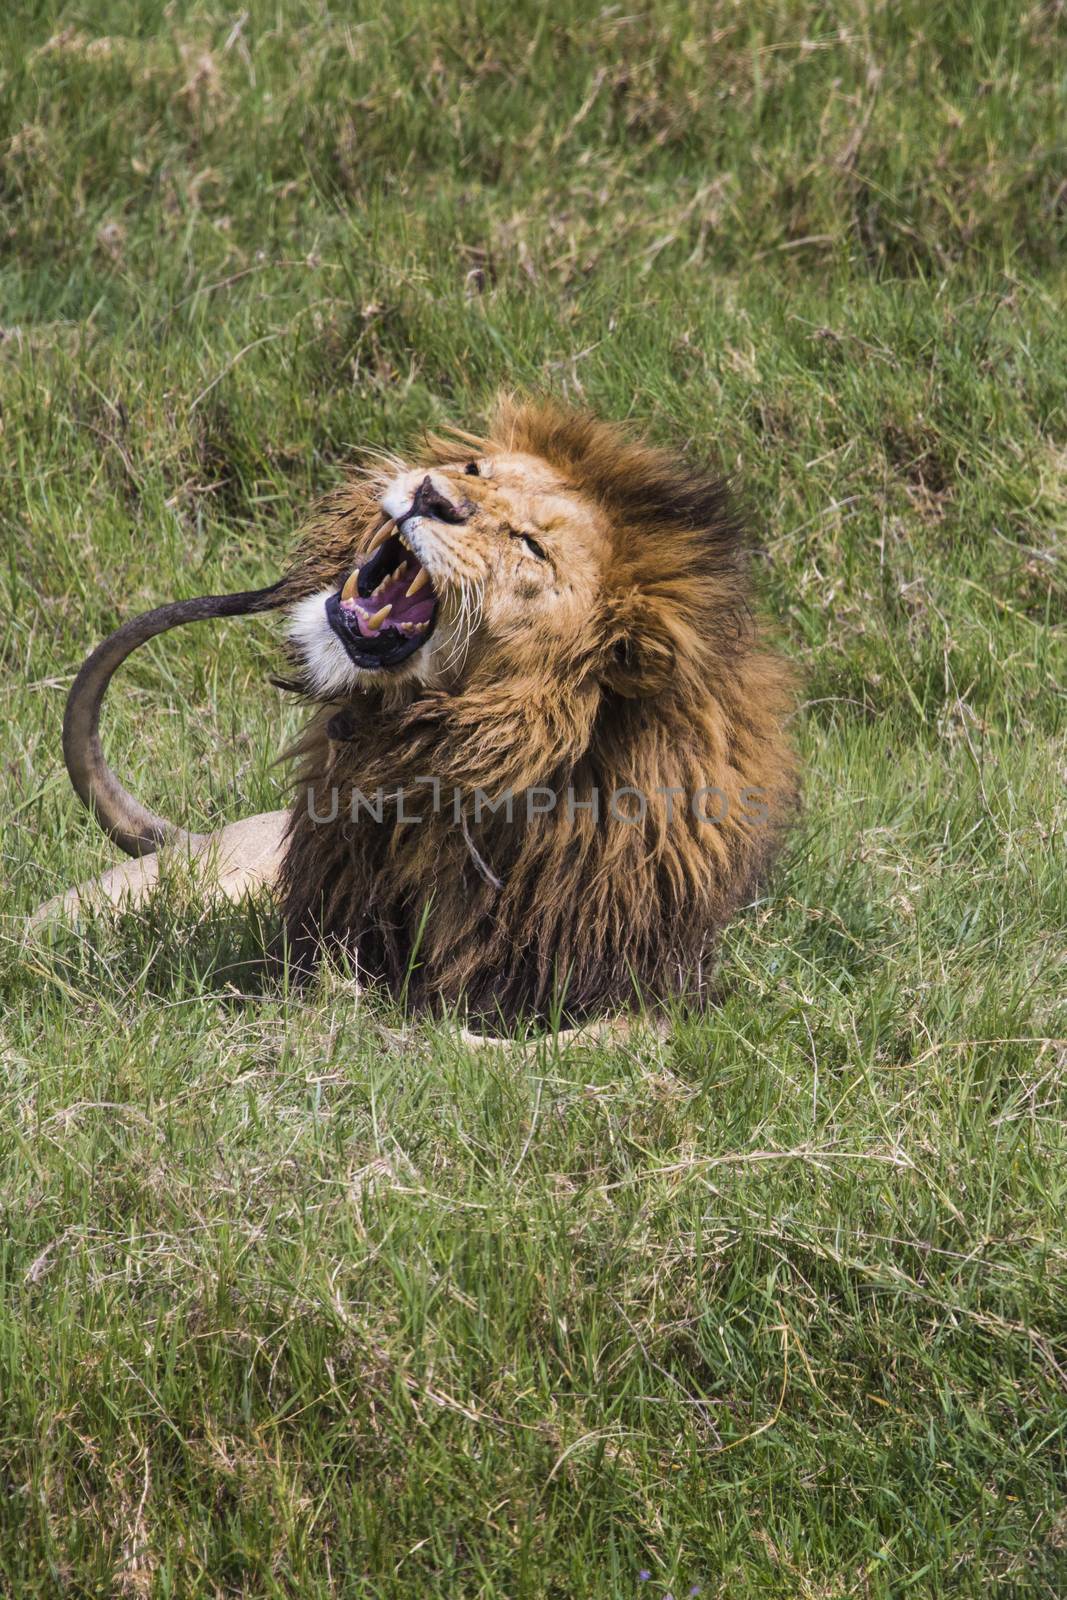 Big Lion showing his dangerous teeth in Masai Mara, Kenya. by mariusz_prusaczyk